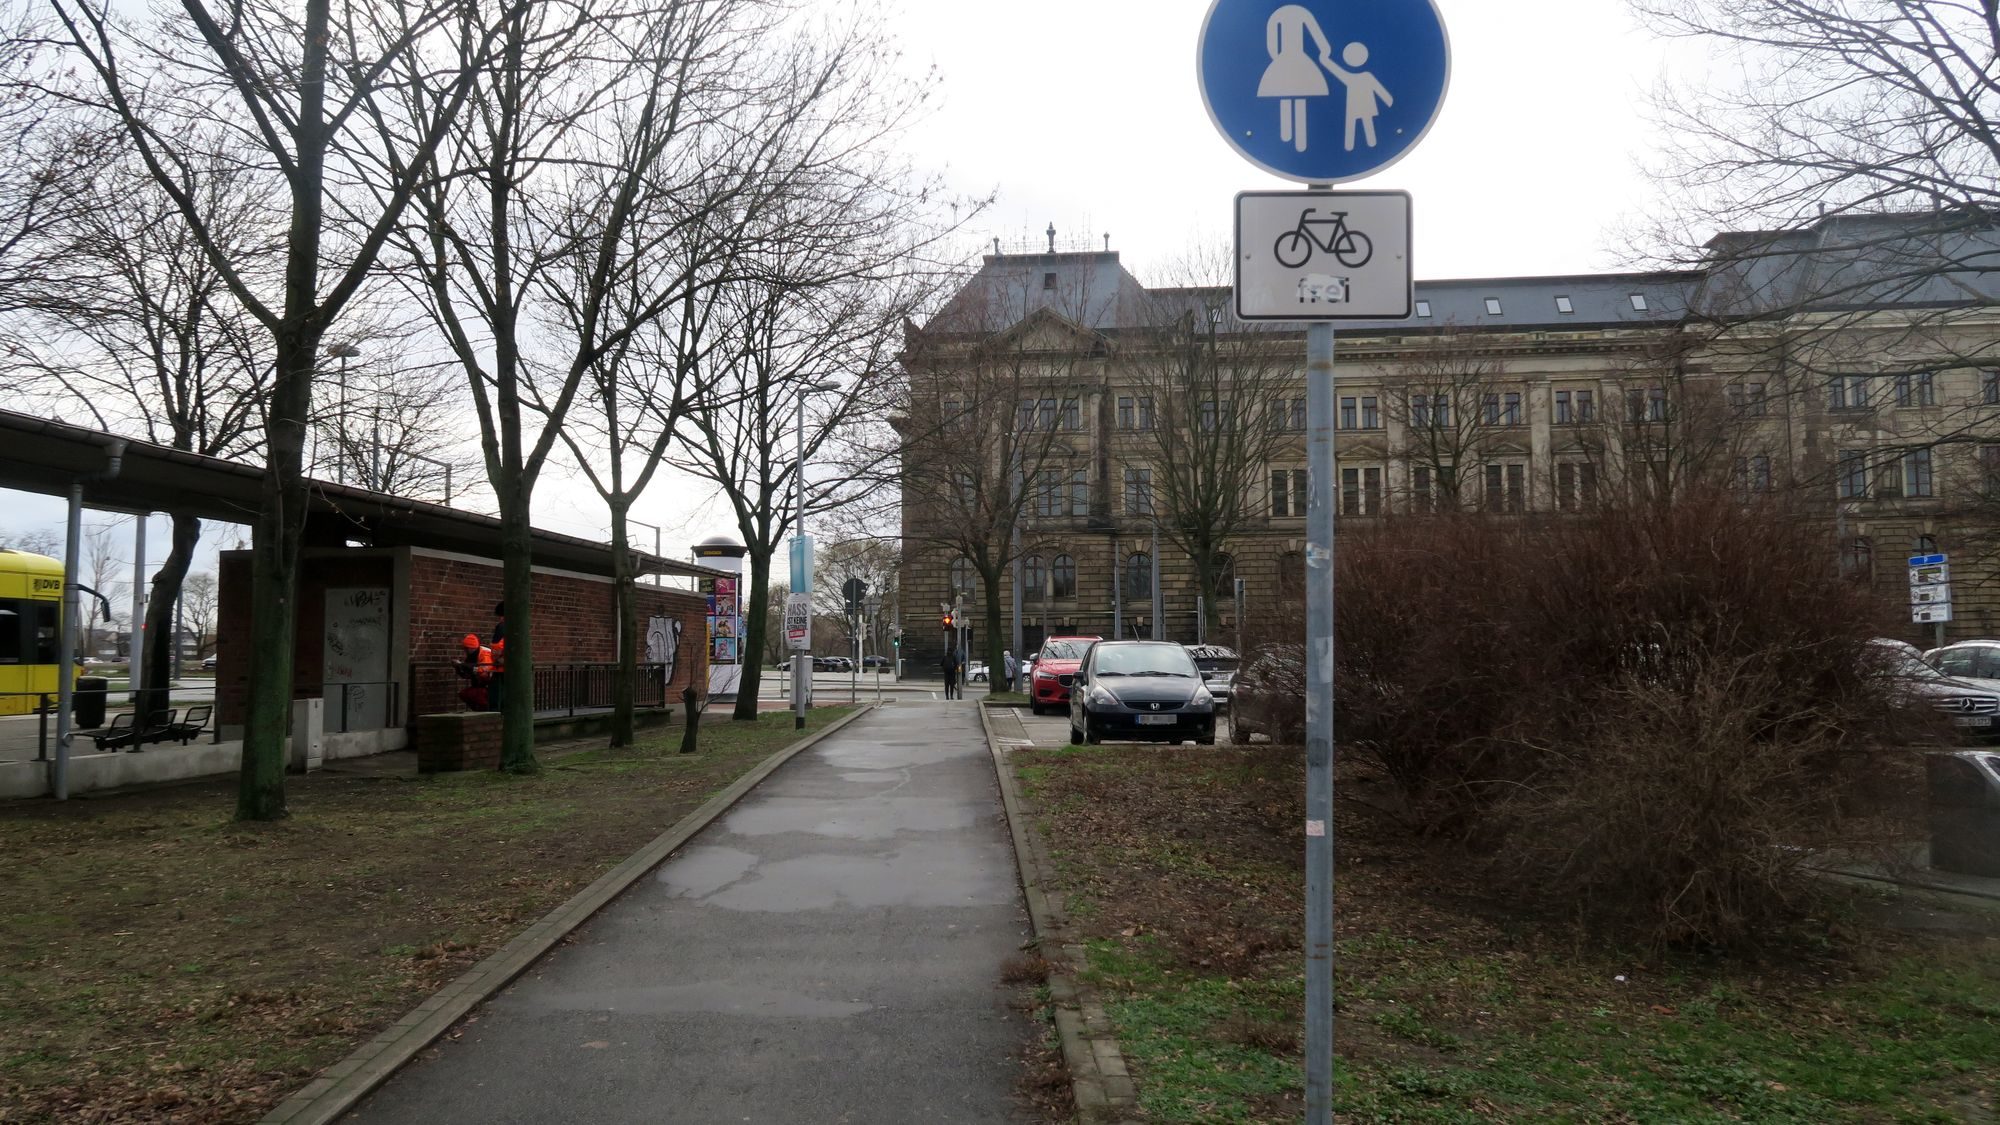 Zum Schluss darf man dann als Radfahrer über den Fußweg. In der Gegenrichtung dürfen sich Radfahrer ebenfalls den Fußweg mit den Fußgängern teilen.